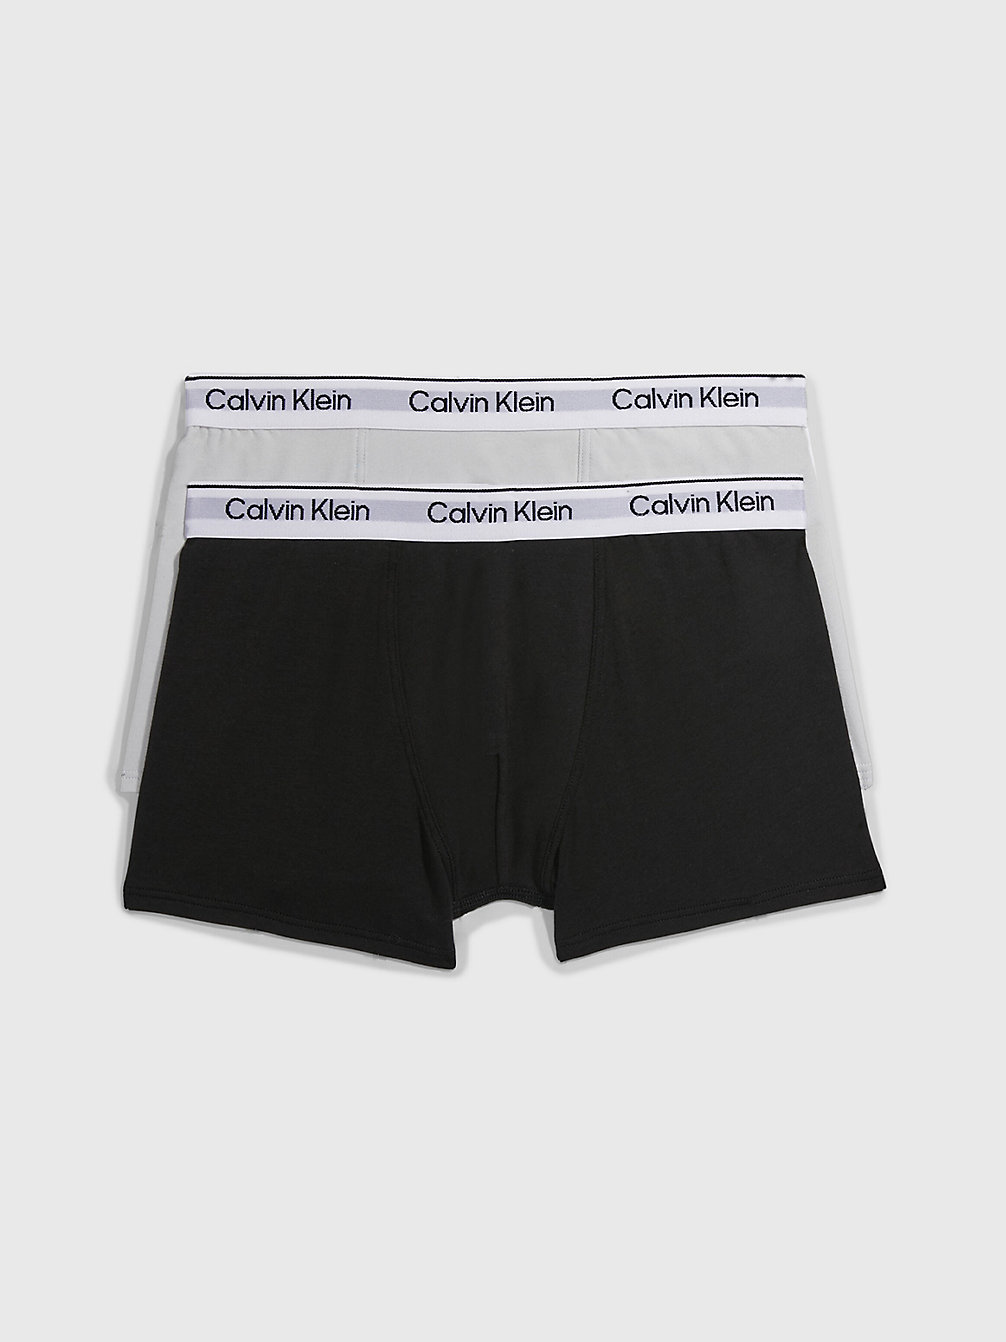 Boxer Aderenti Bambino In Confezione Da 2 - Modern Cotton > STONEGREY/PVHBLACK > undefined bambino > Calvin Klein